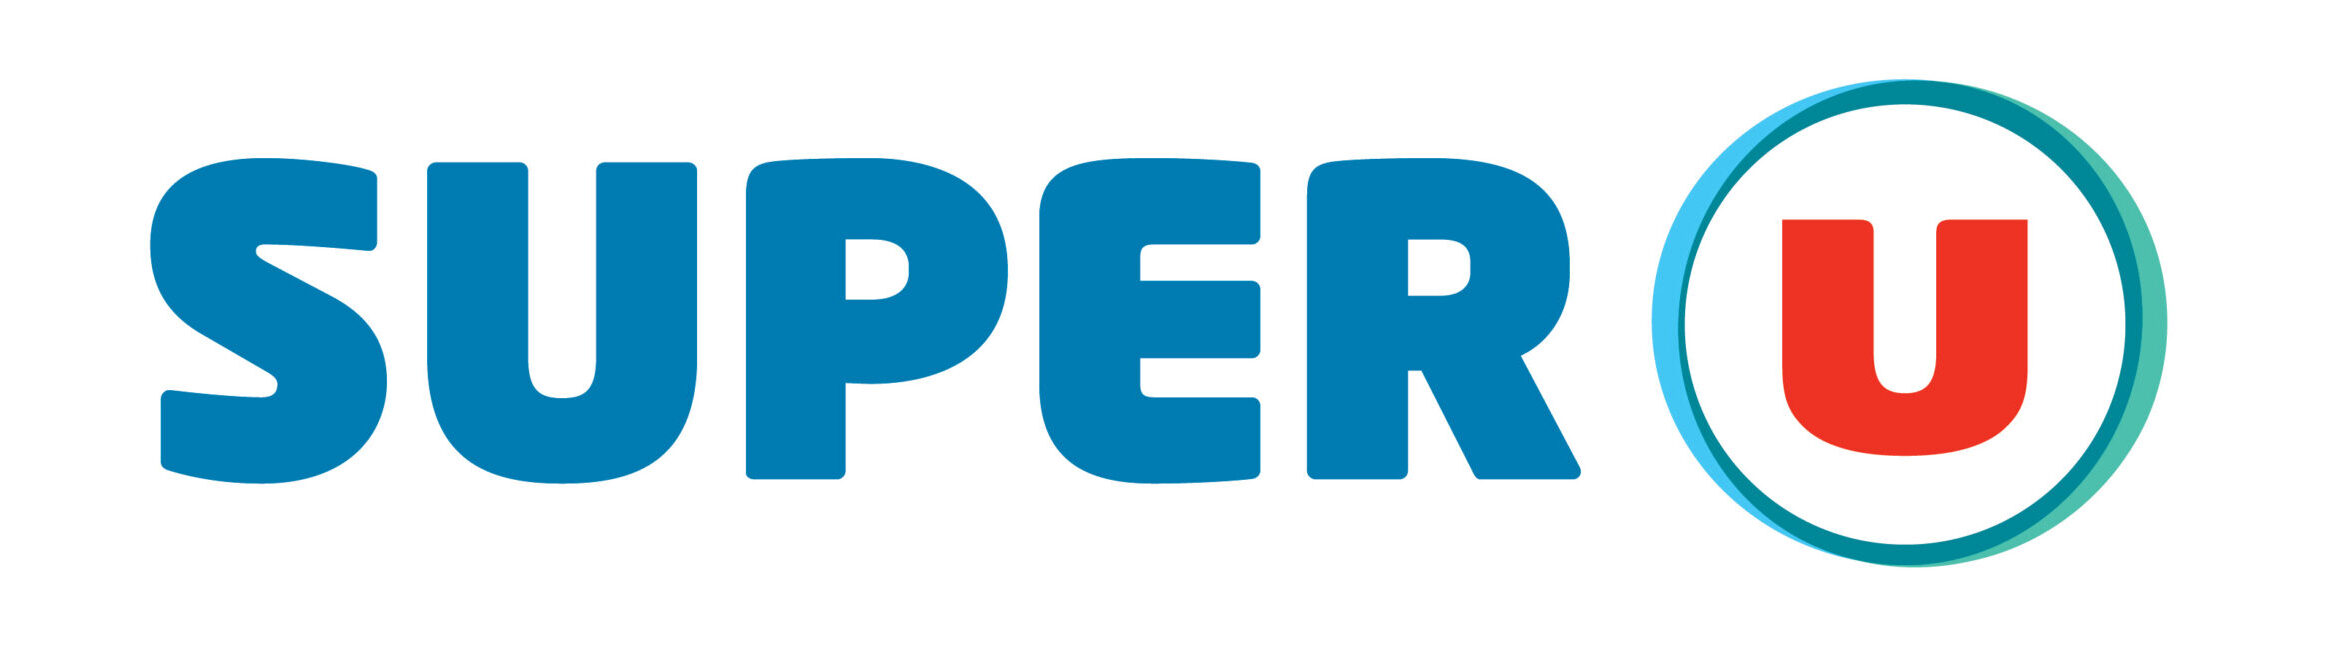 logo Super U